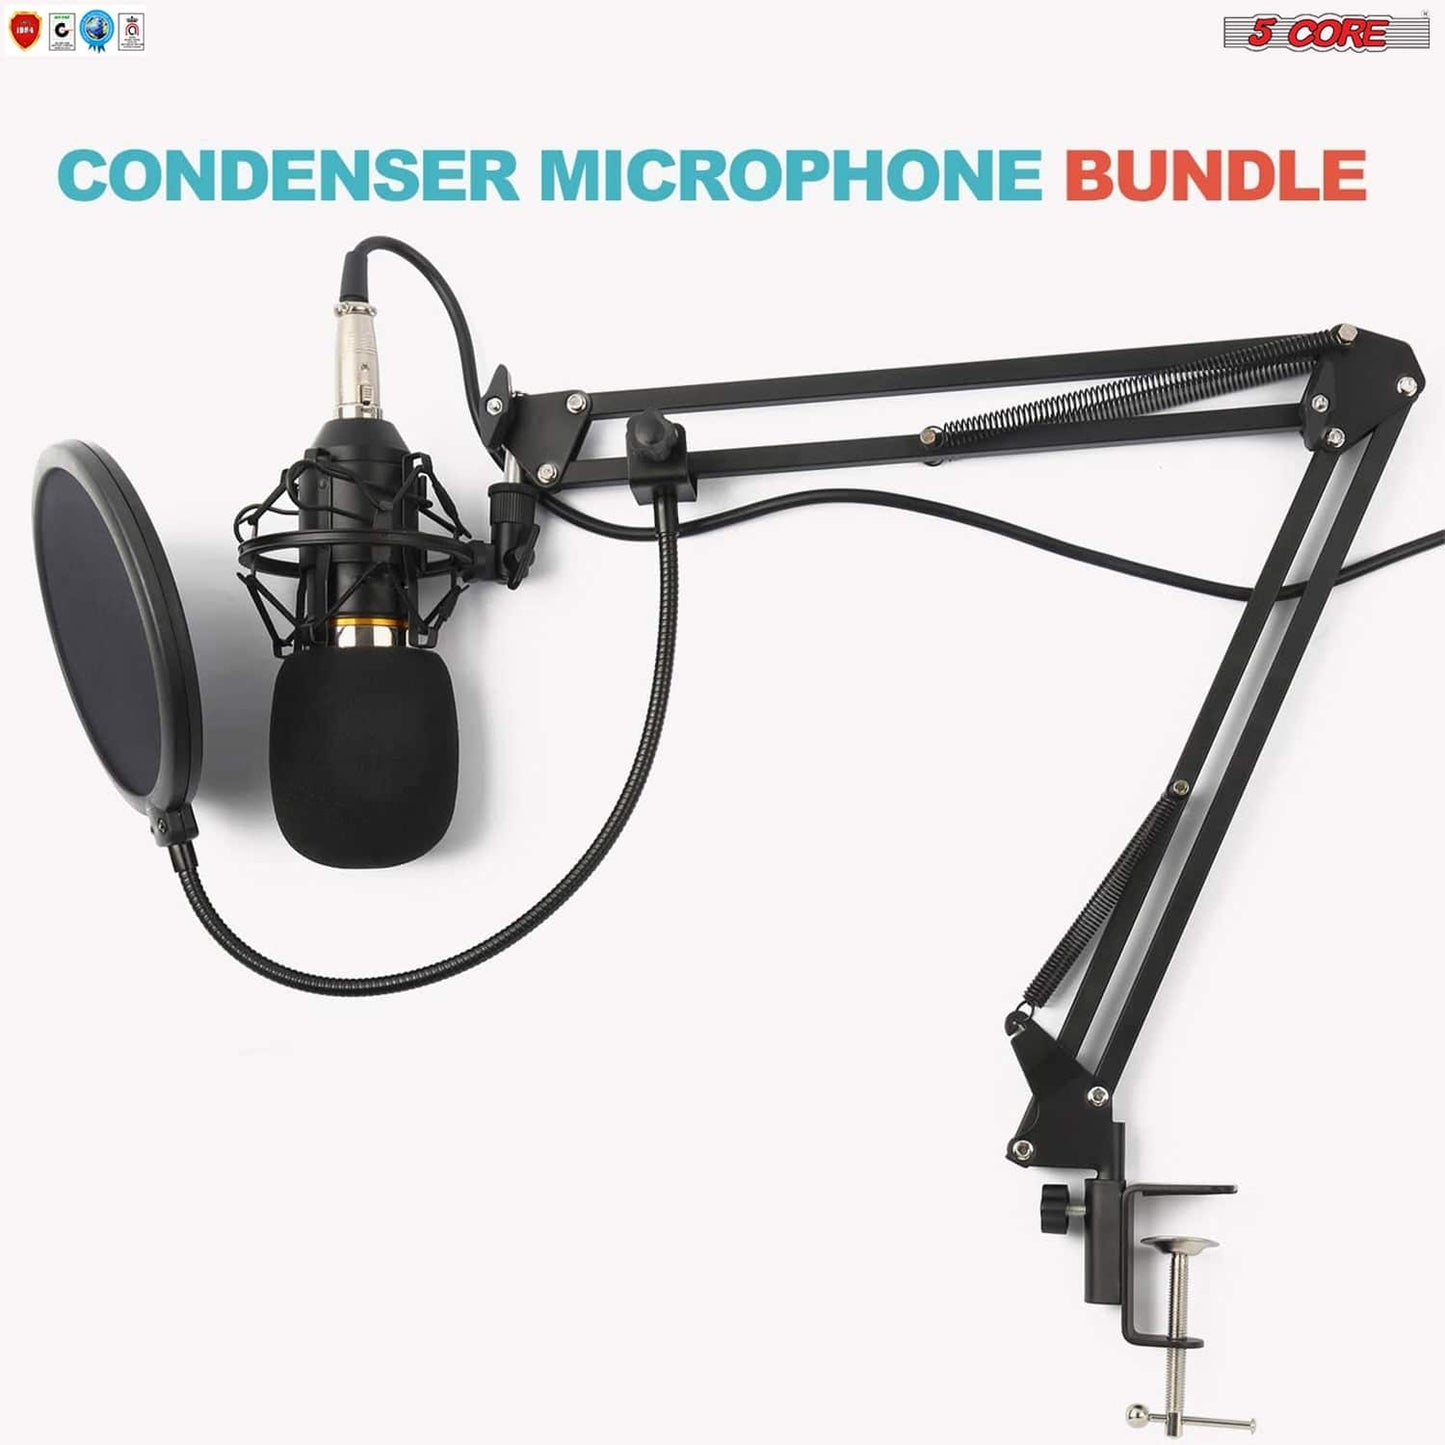 5Core Premium Pro Audio Condenser Recording Microphone Podcast Gaming PC Studio Mic (Gold) Rec Set